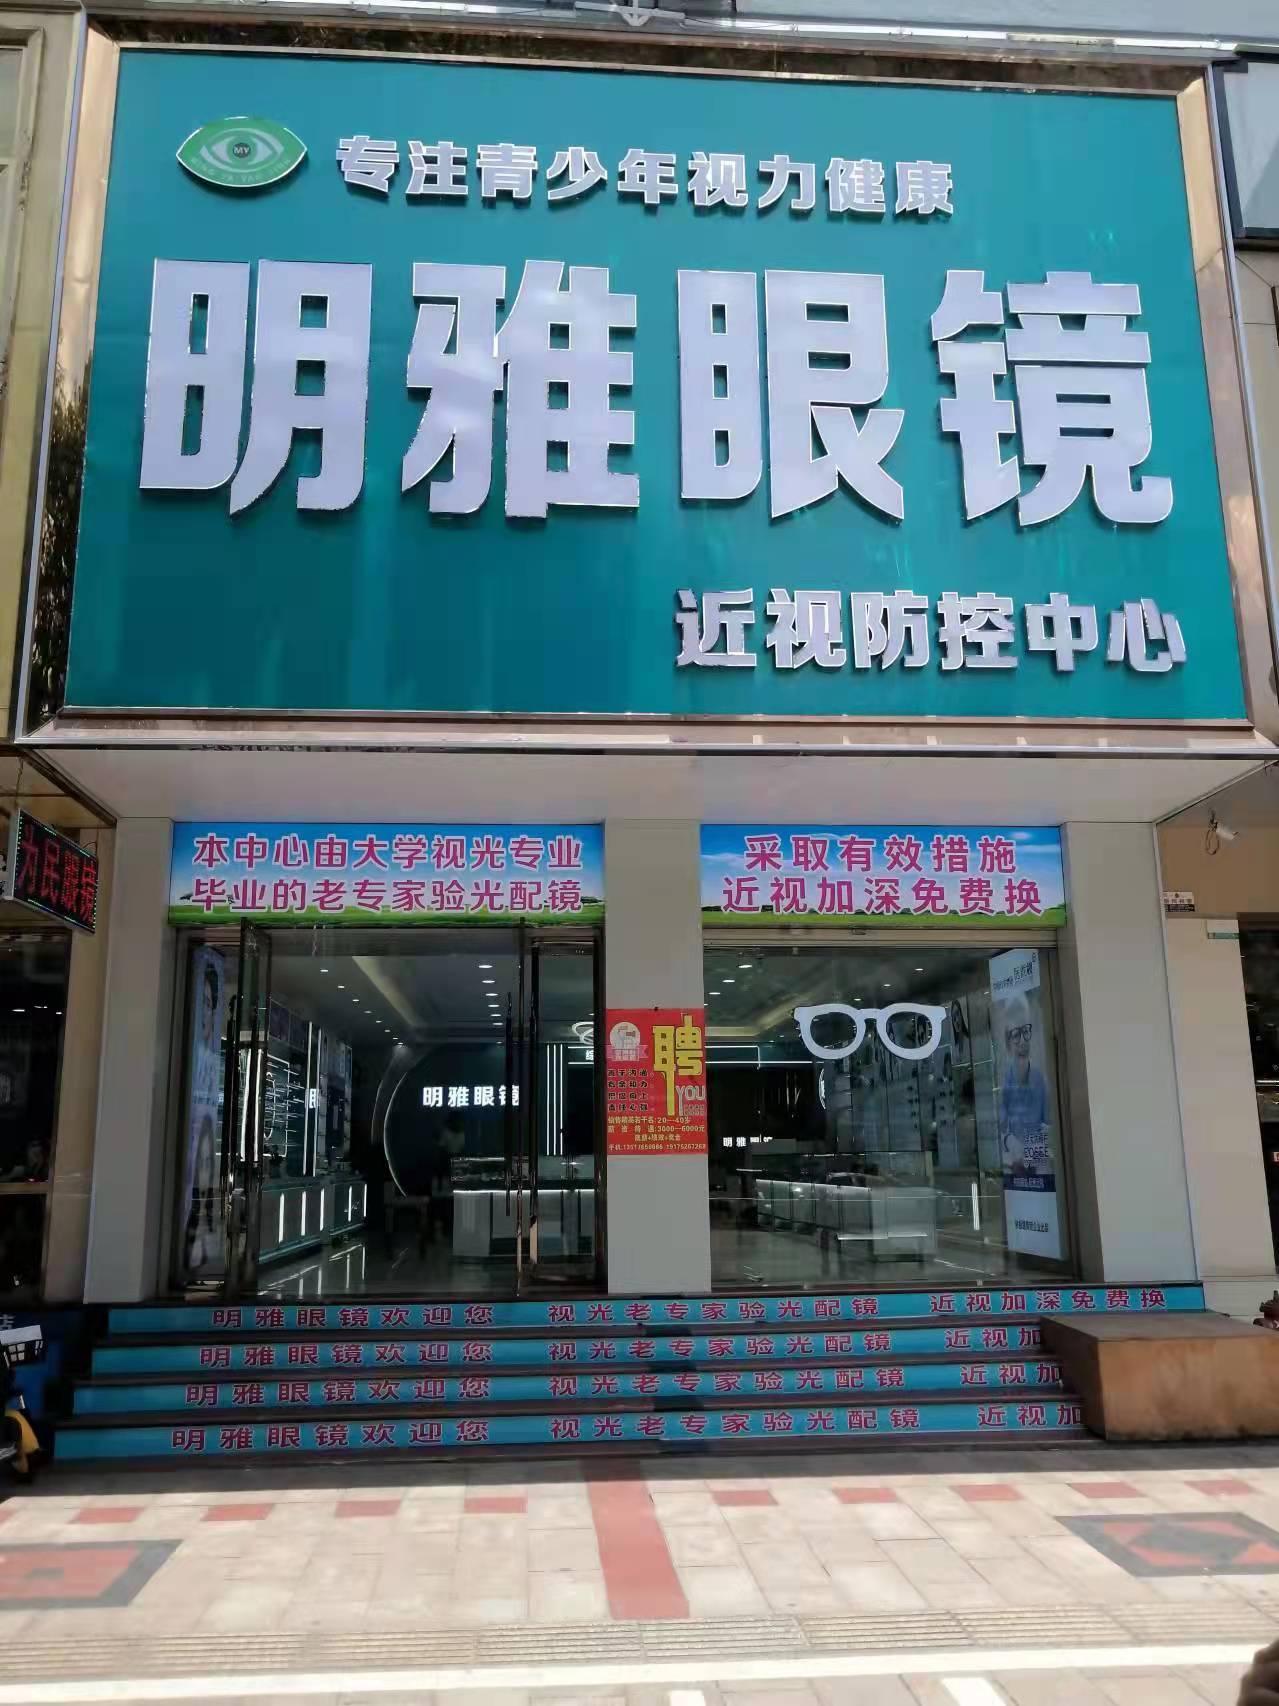 珠海市高新区大光明眼镜有限公司的企业标志